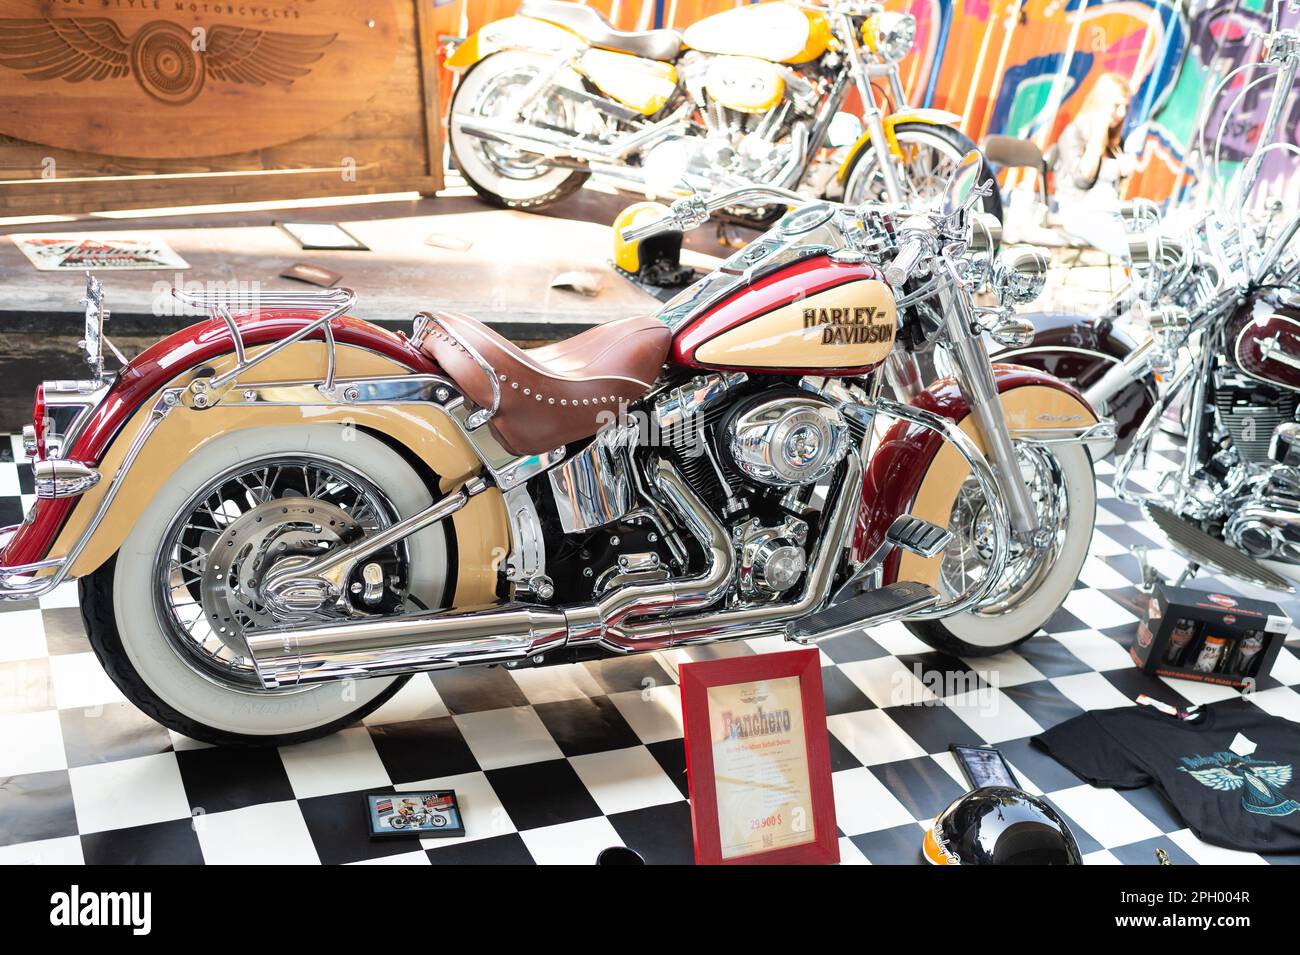 Kiev, Ukraine - 13 septembre 2014: Harley Davidson moto avec chrome et  détails de pièces métalliques Photo Stock - Alamy